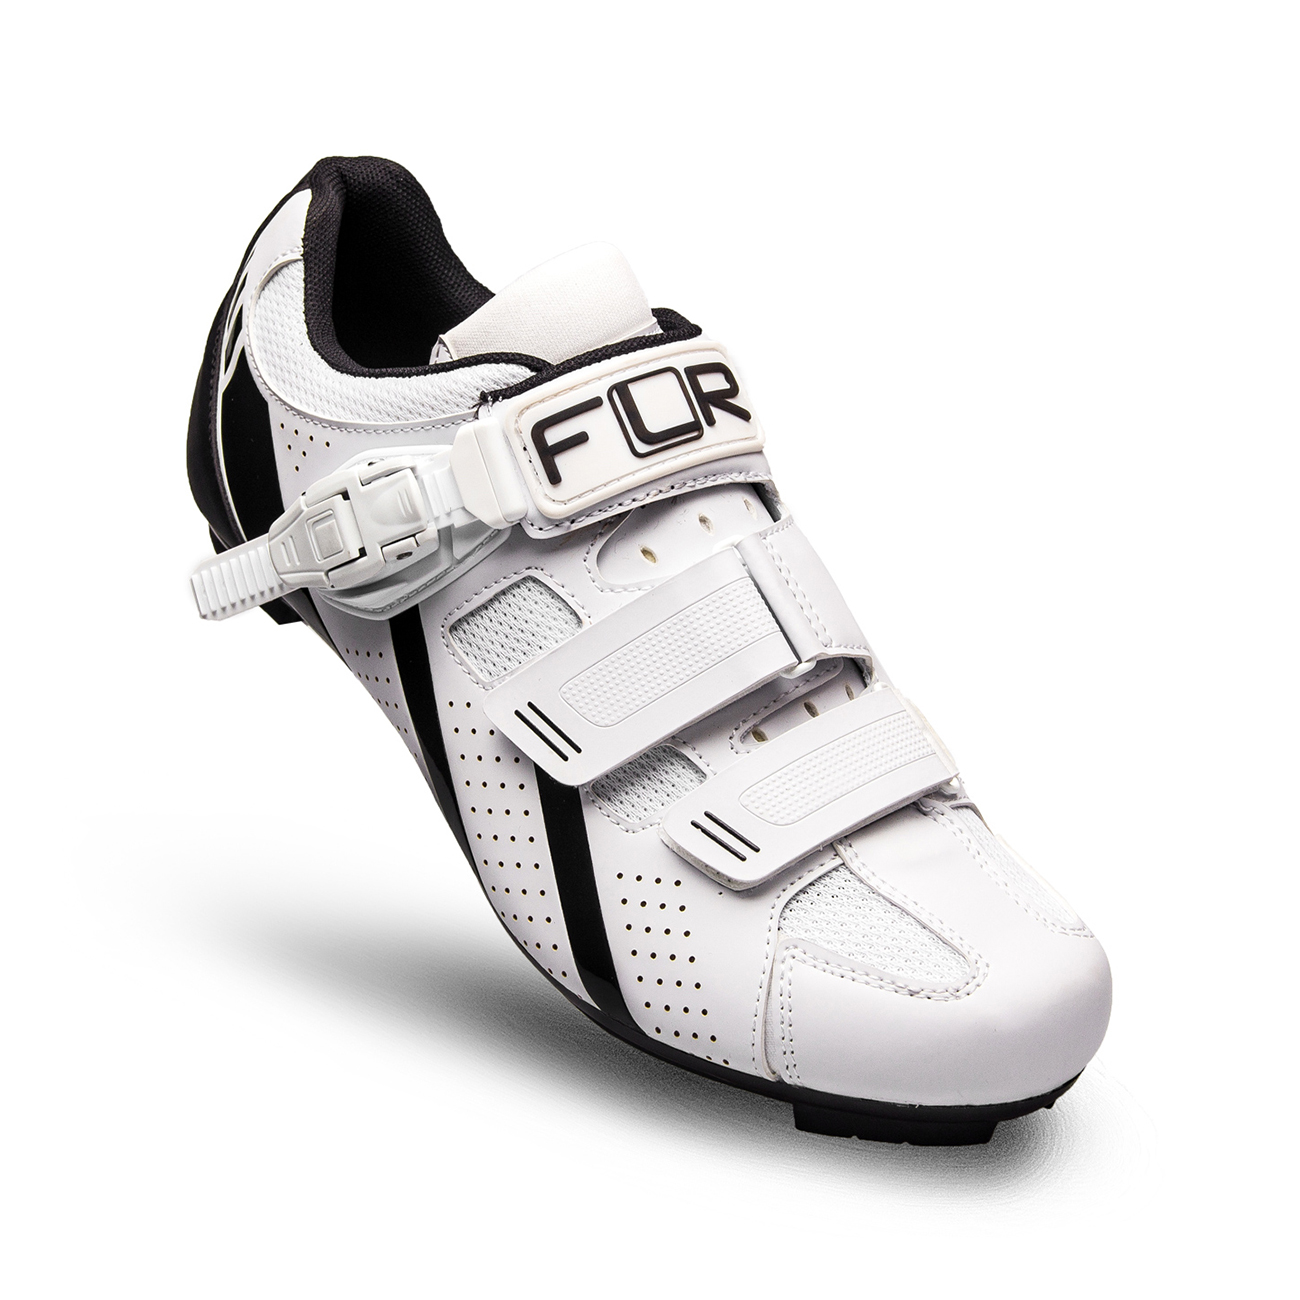 
                FLR Cyklistické tretry - F15 - černá/bílá 47
            